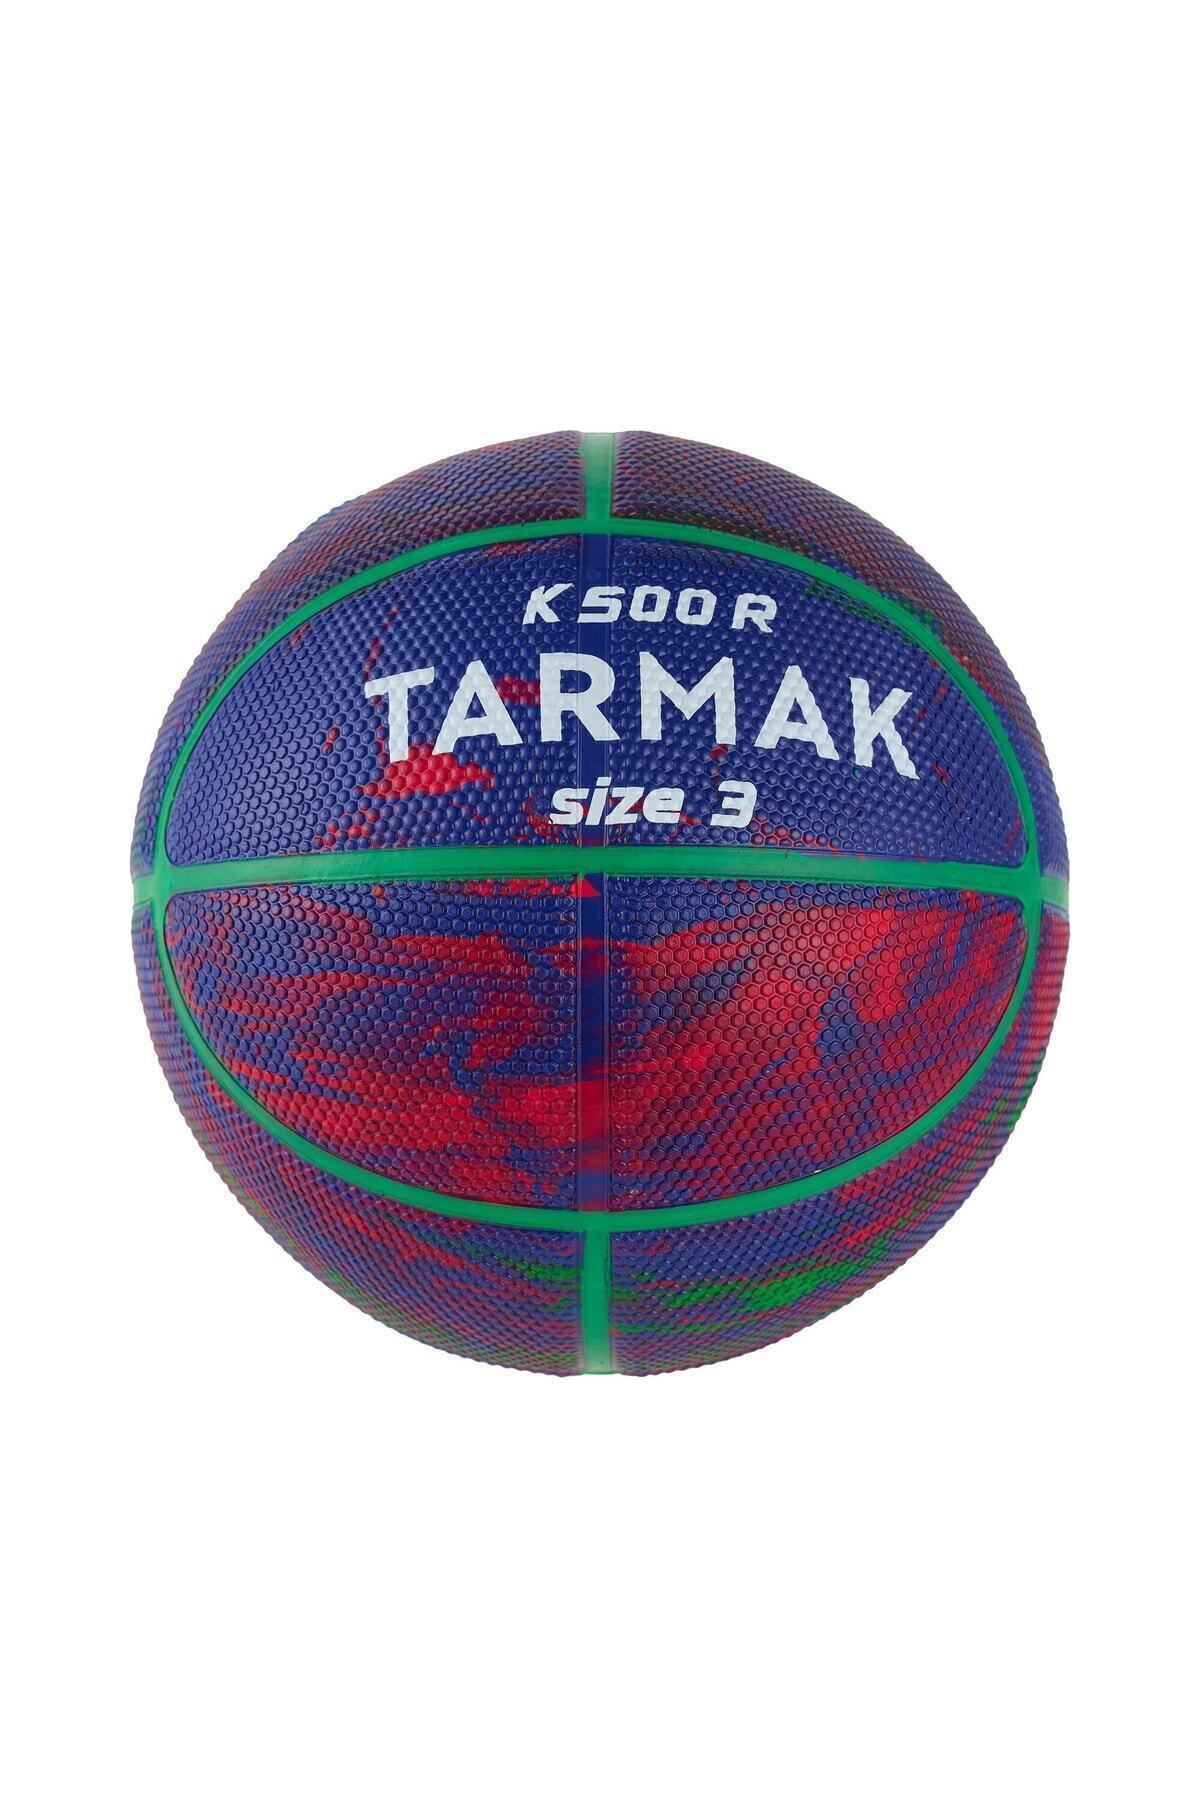 MEDITERIAN Pompa dahil değildir Tarmak Çocuk Basketbol Topu - 3 Numara - Mavi / Kırmızı - K500 3 Numara FIBA M